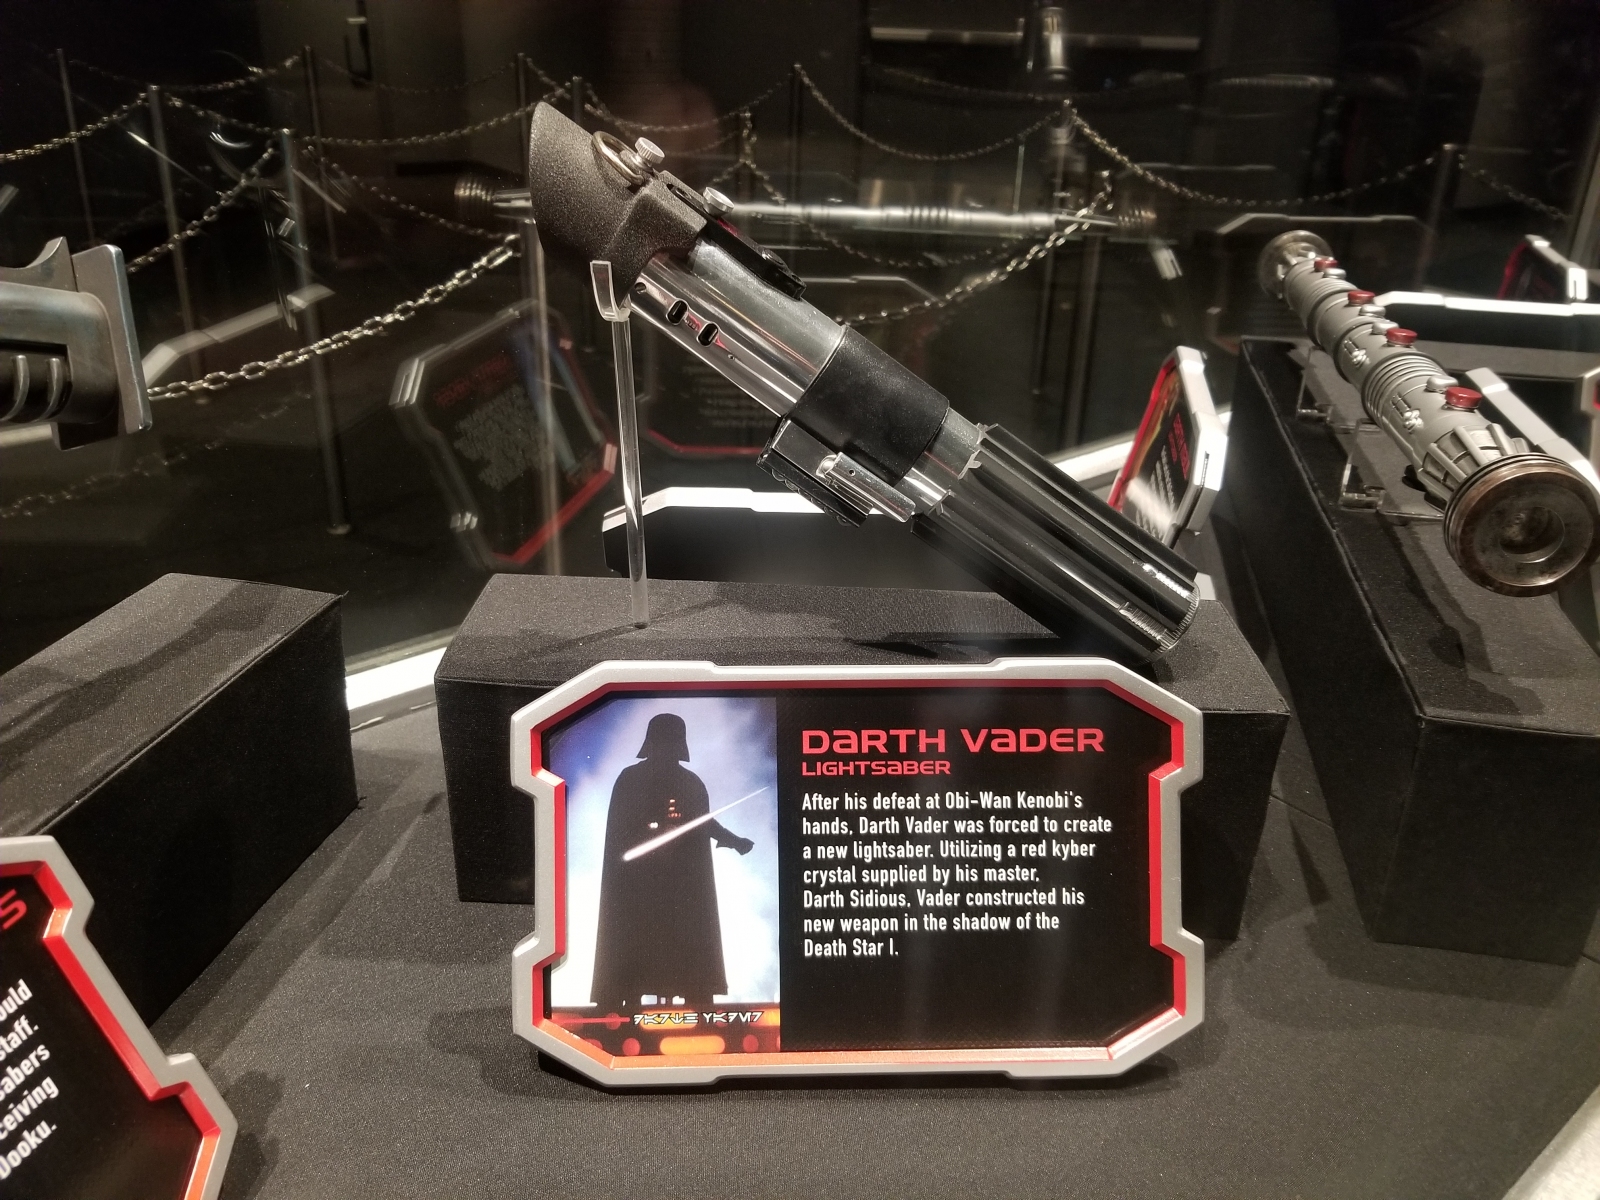 Darth Vader lightsaber